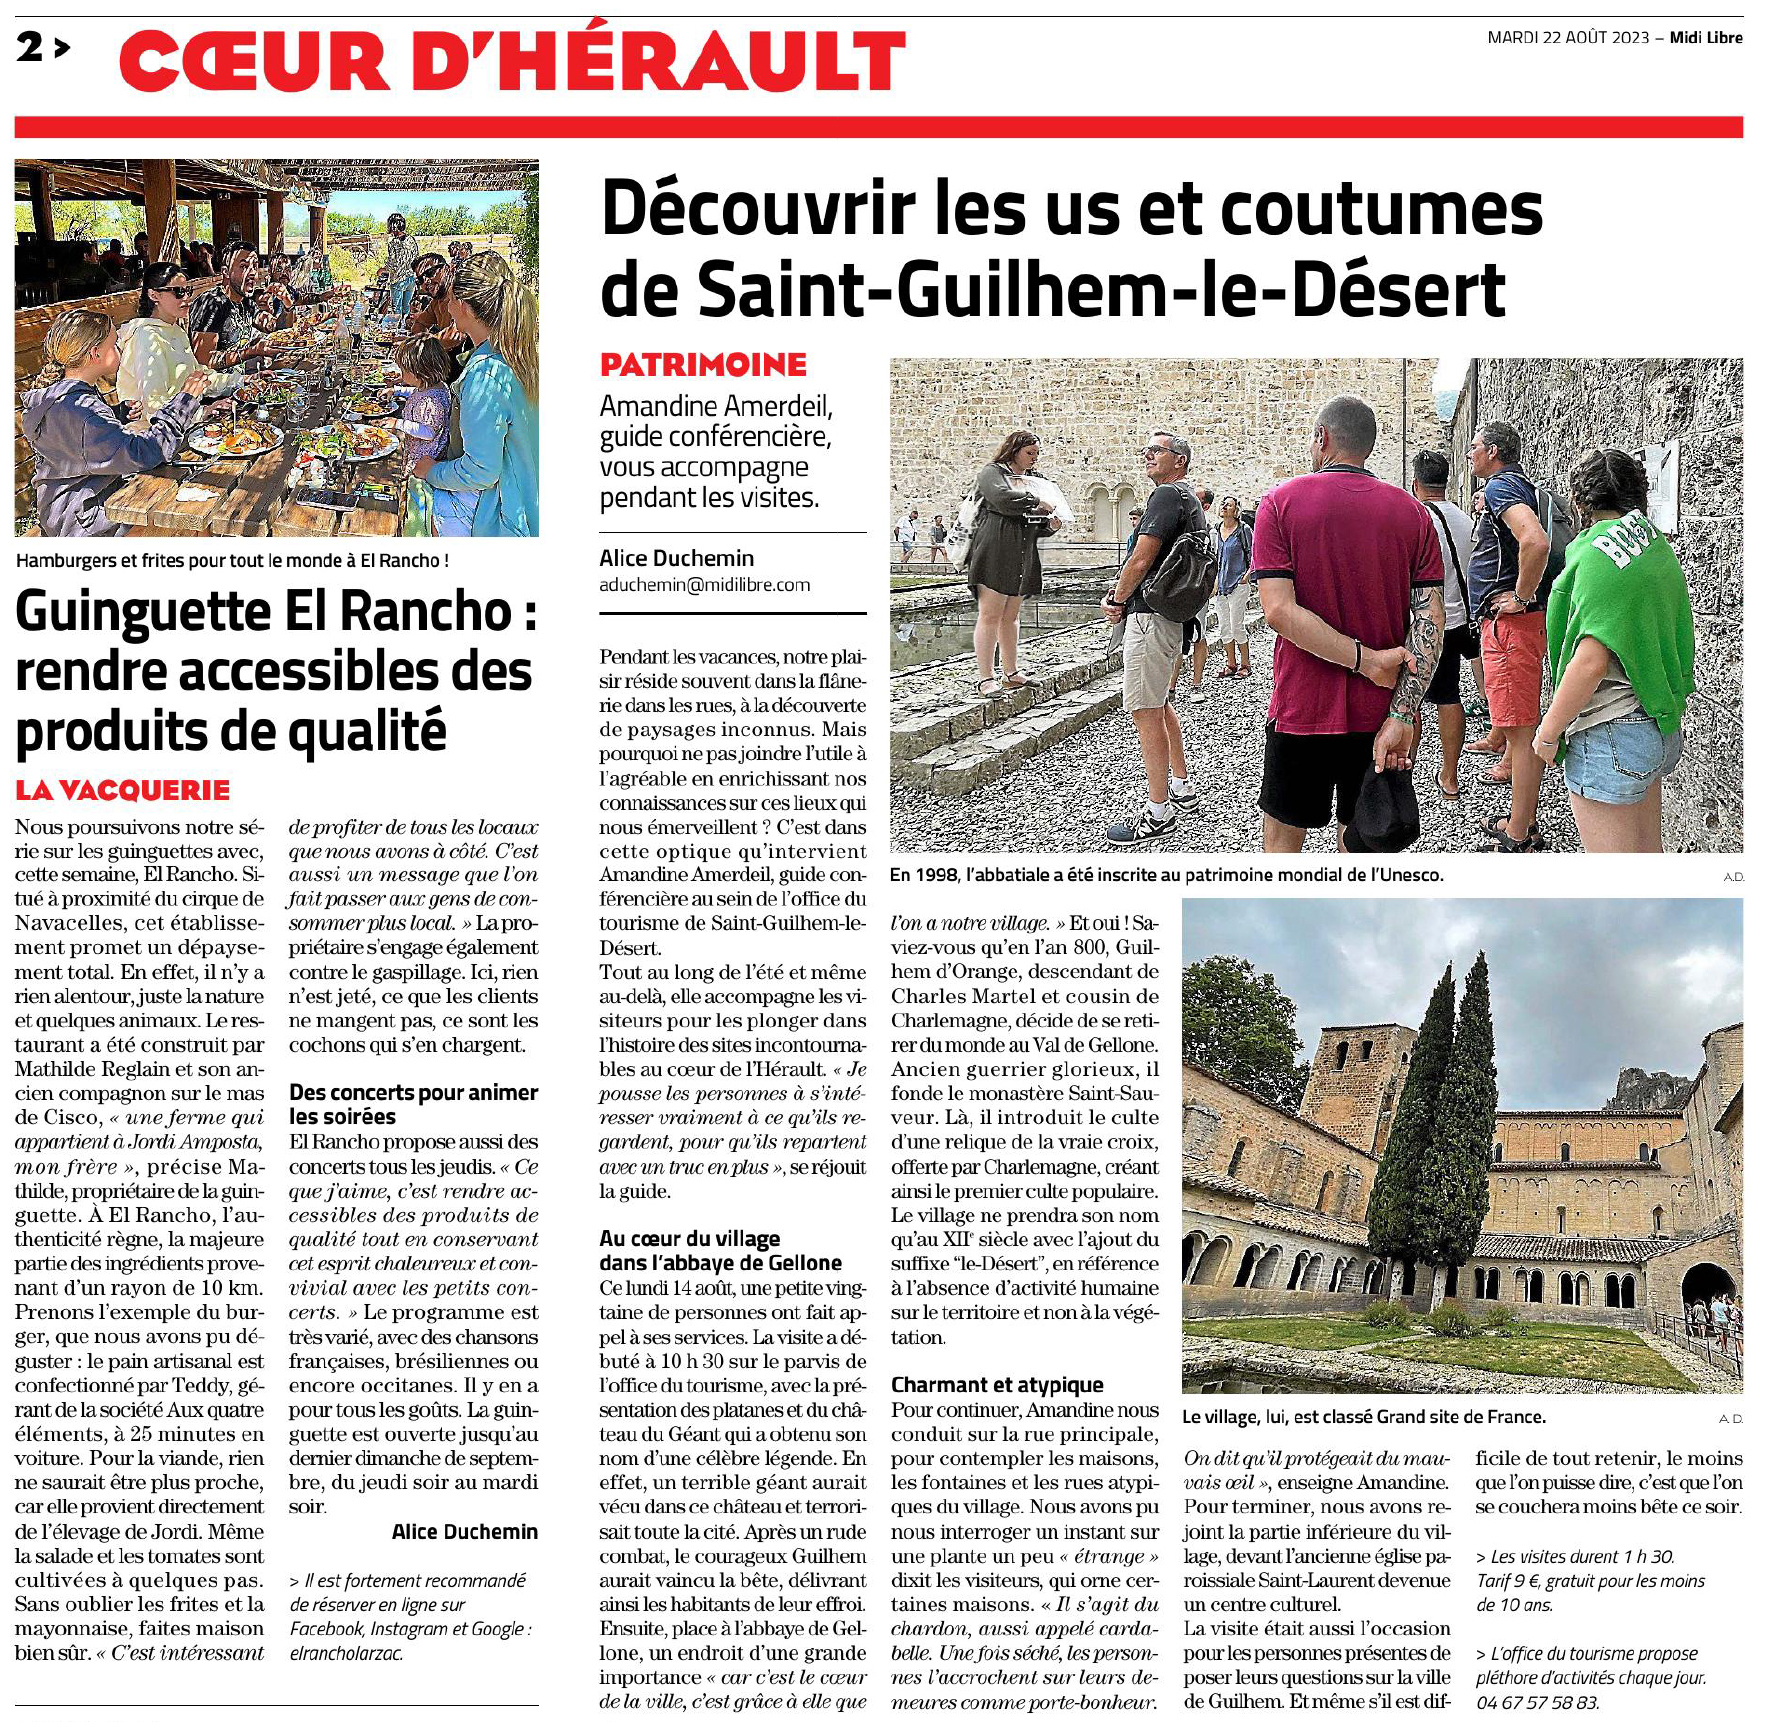 Reportage dans Midi Libre Coeur d&apos;Hérault